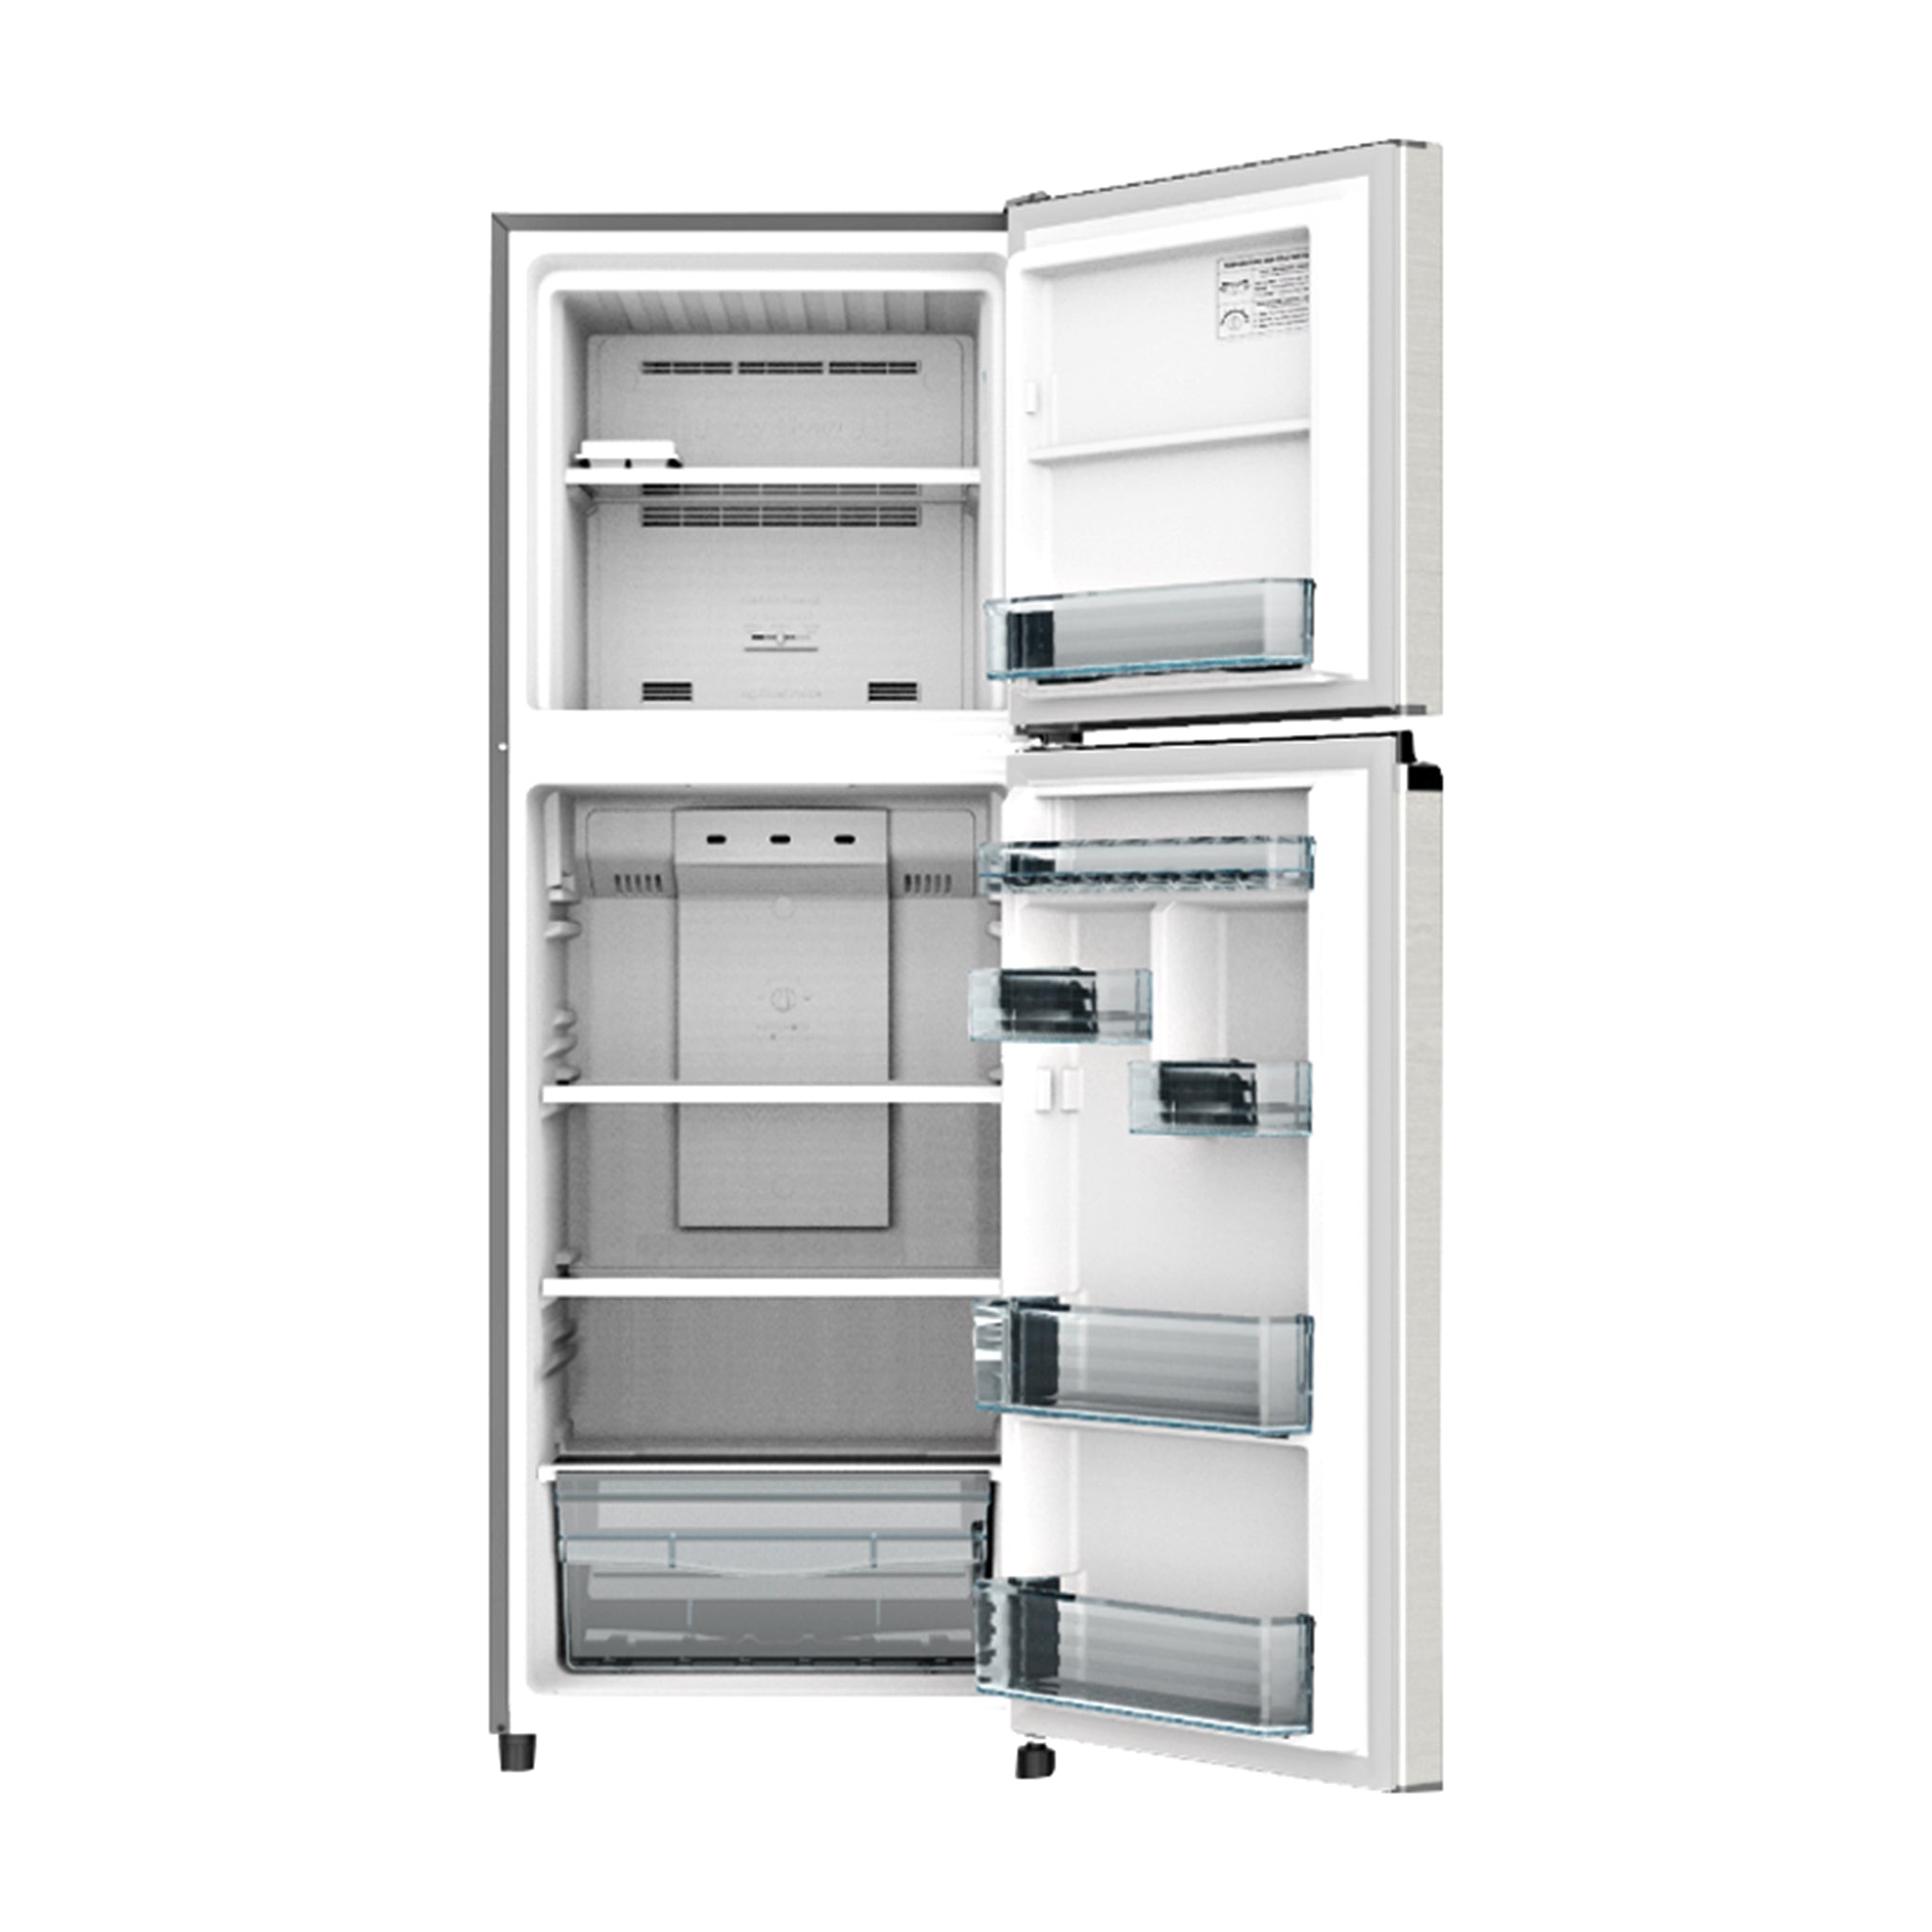 PANASONIC NR-BP280VS 2-Door Top Freezer Fridge No Frost Inverter Refrigerator Panasonic